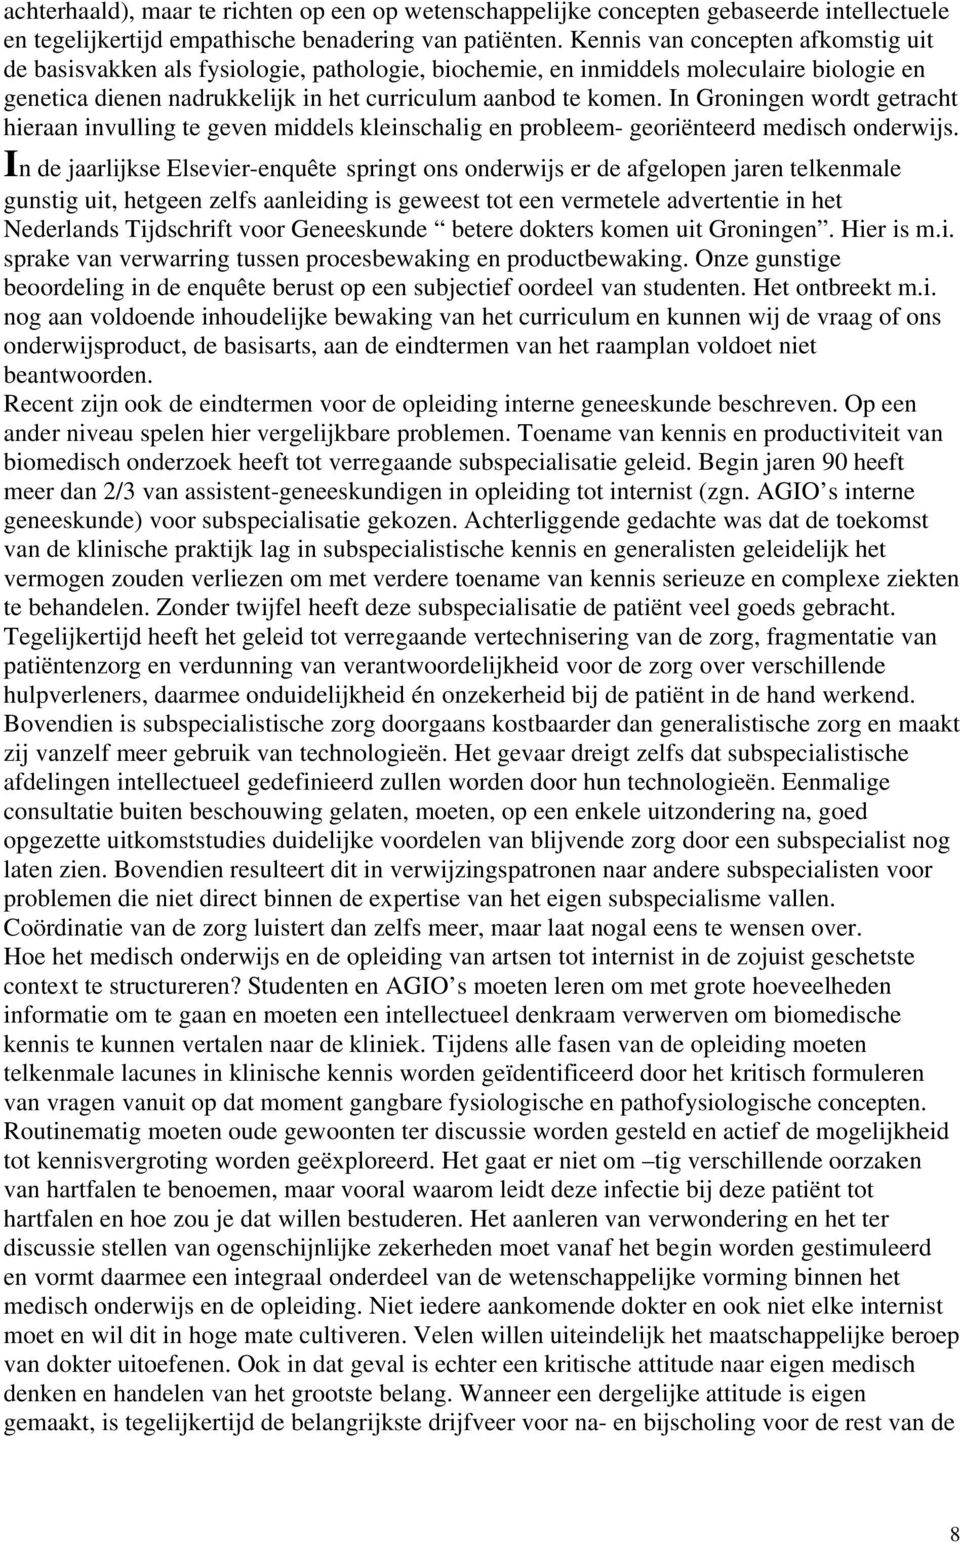 In Groningen wordt getracht hieraan invulling te geven middels kleinschalig en probleem- georiënteerd medisch onderwijs.